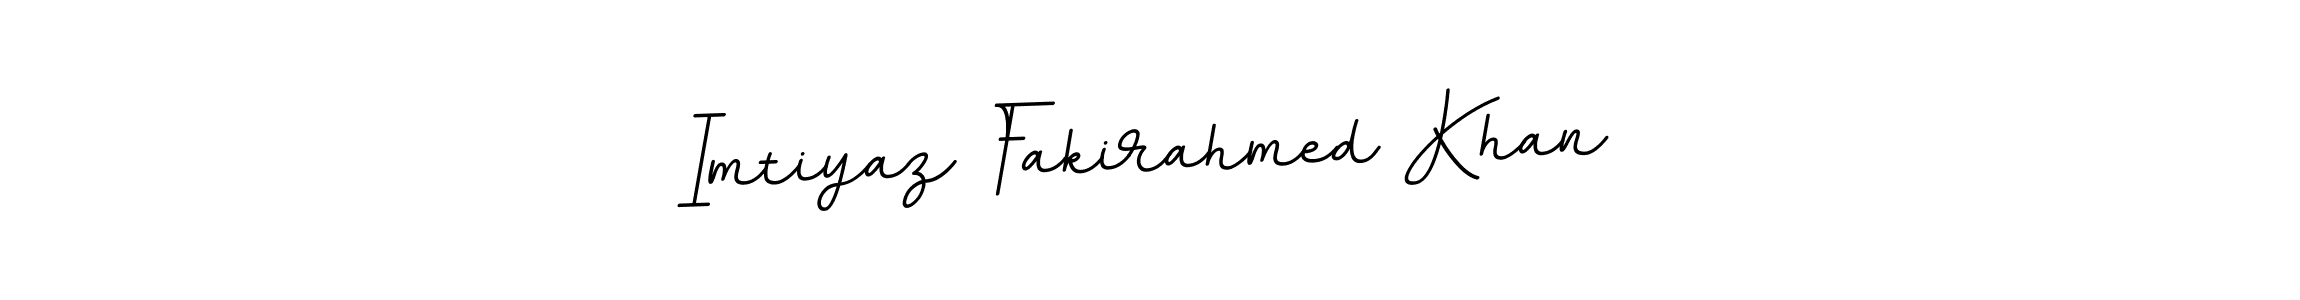 Best and Professional Signature Style for Imtiyaz Fakirahmed Khan. BallpointsItalic-DORy9 Best Signature Style Collection. Imtiyaz Fakirahmed Khan signature style 11 images and pictures png